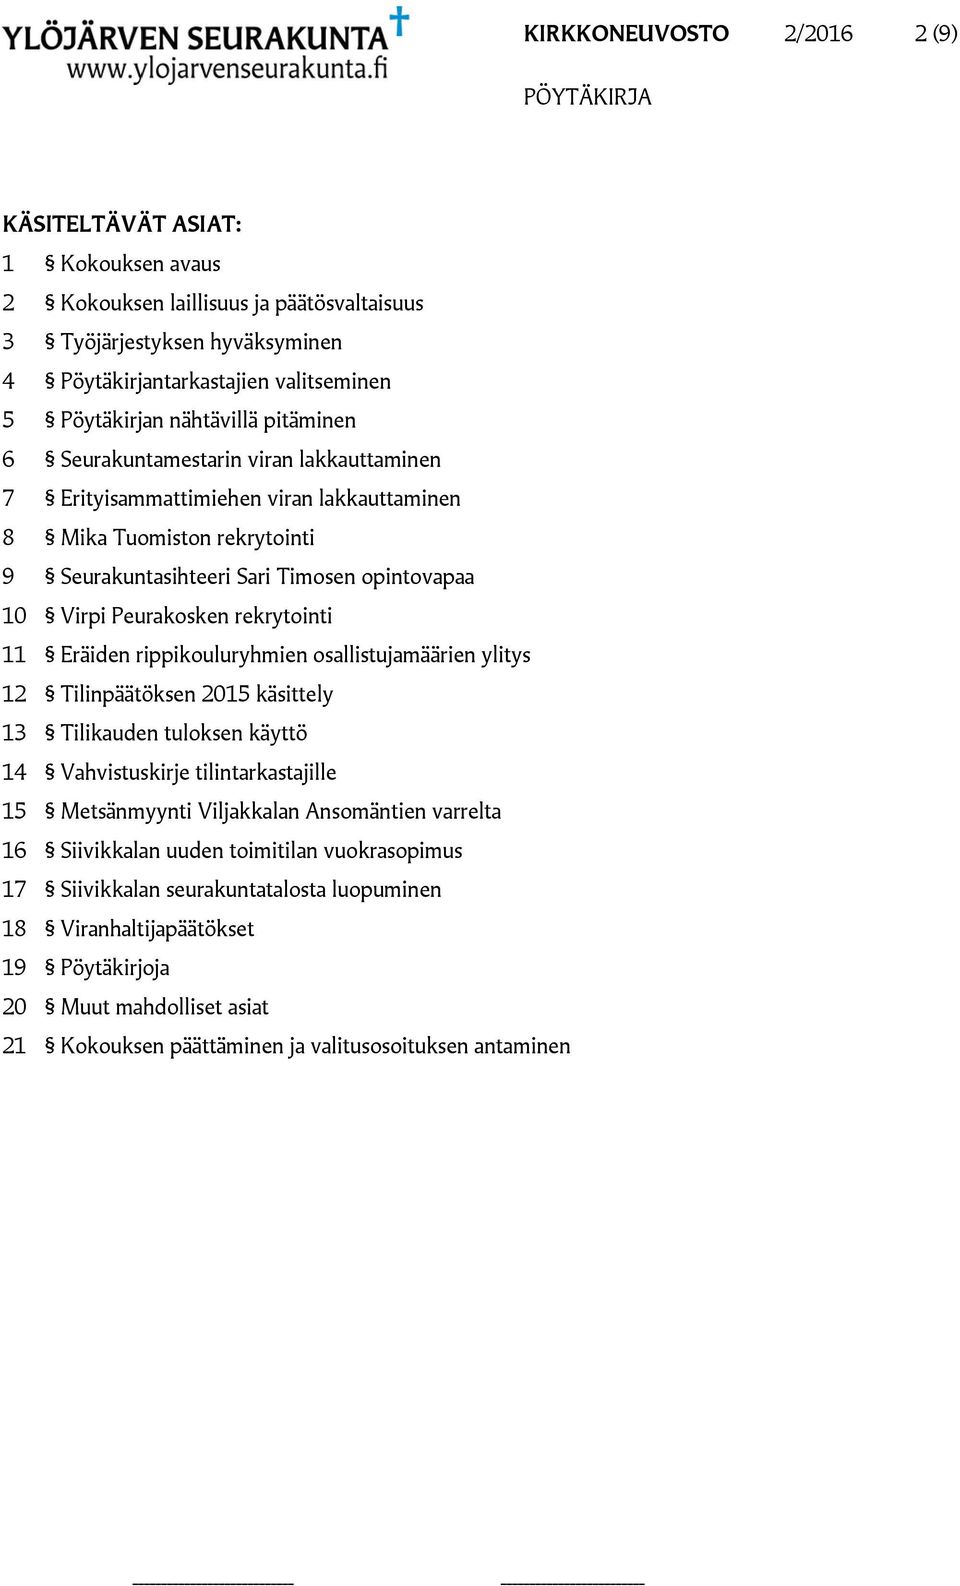 Peurakosken rekrytointi 11 Eräiden rippikouluryhmien osallistujamäärien ylitys 12 Tilinpäätöksen 2015 käsittely 13 Tilikauden tuloksen käyttö 14 Vahvistuskirje tilintarkastajille 15 Metsänmyynti